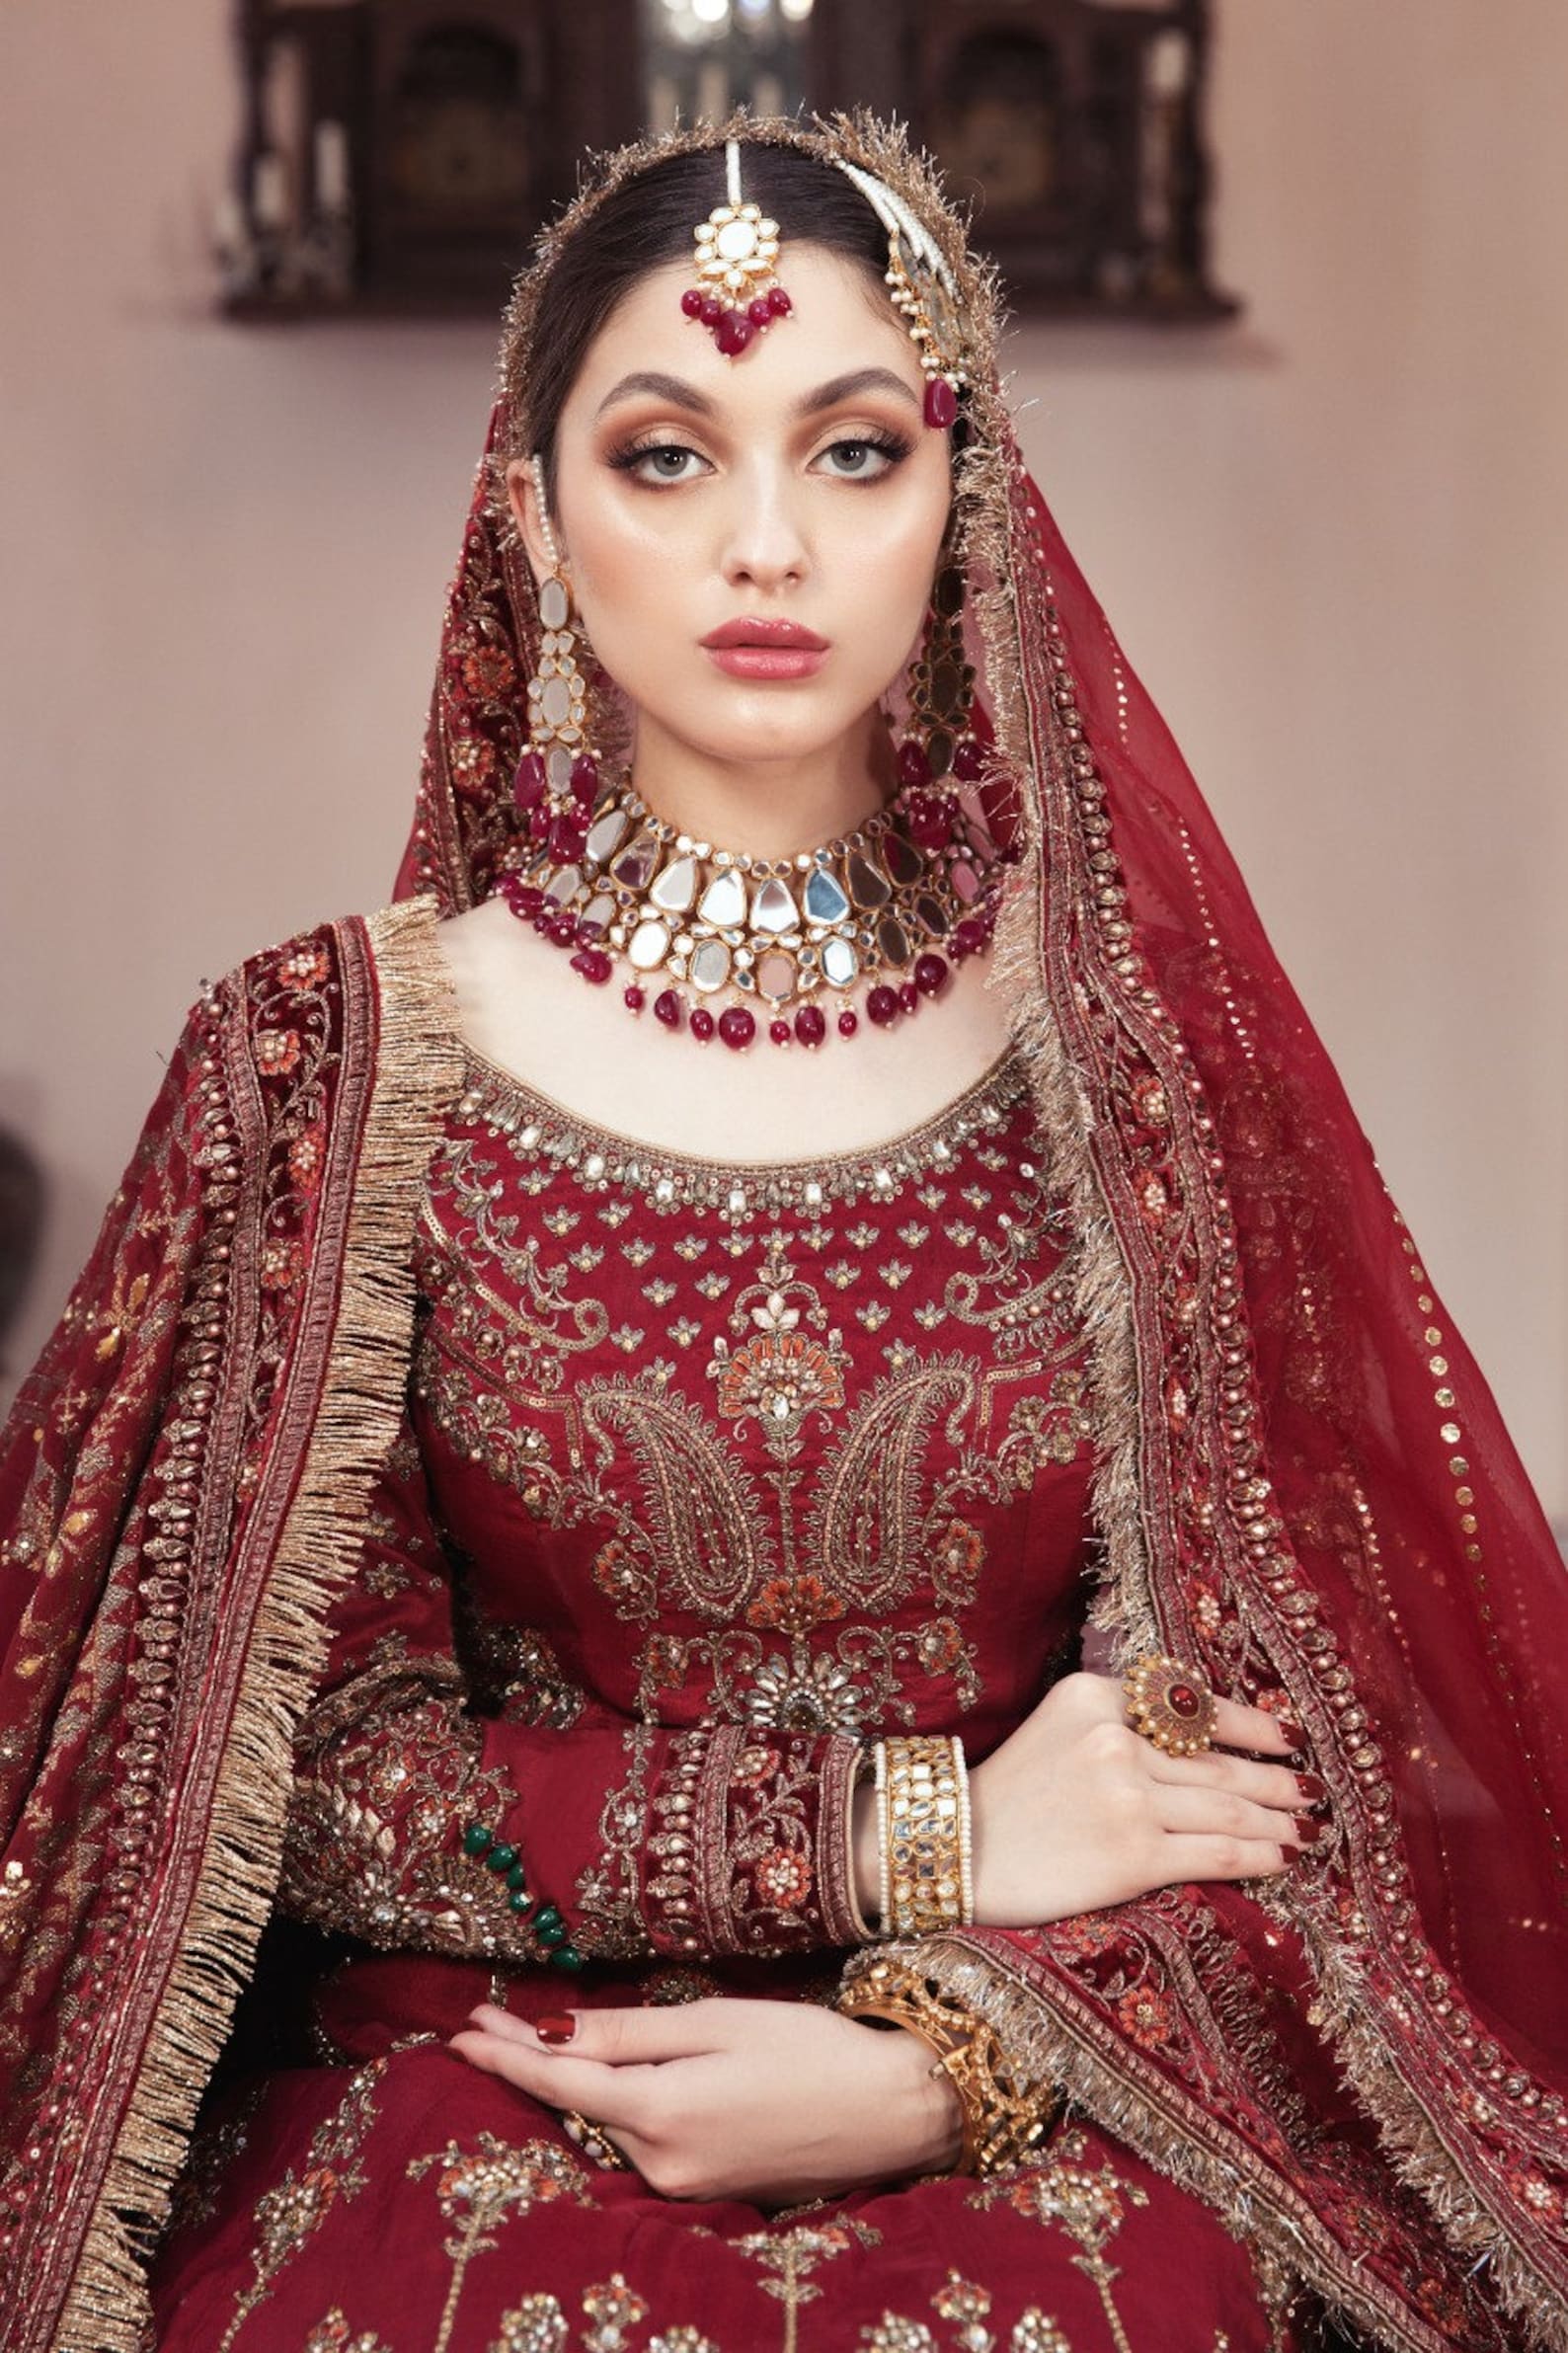 दुनिया की सबसे महंगी शादी, दुल्हन ने पहना 4 करोड़ की कीमत का गाउन | World's  most extravagant wedding, Bride gets married in more then rs 4 Crore gown -  Hindi Oneindia